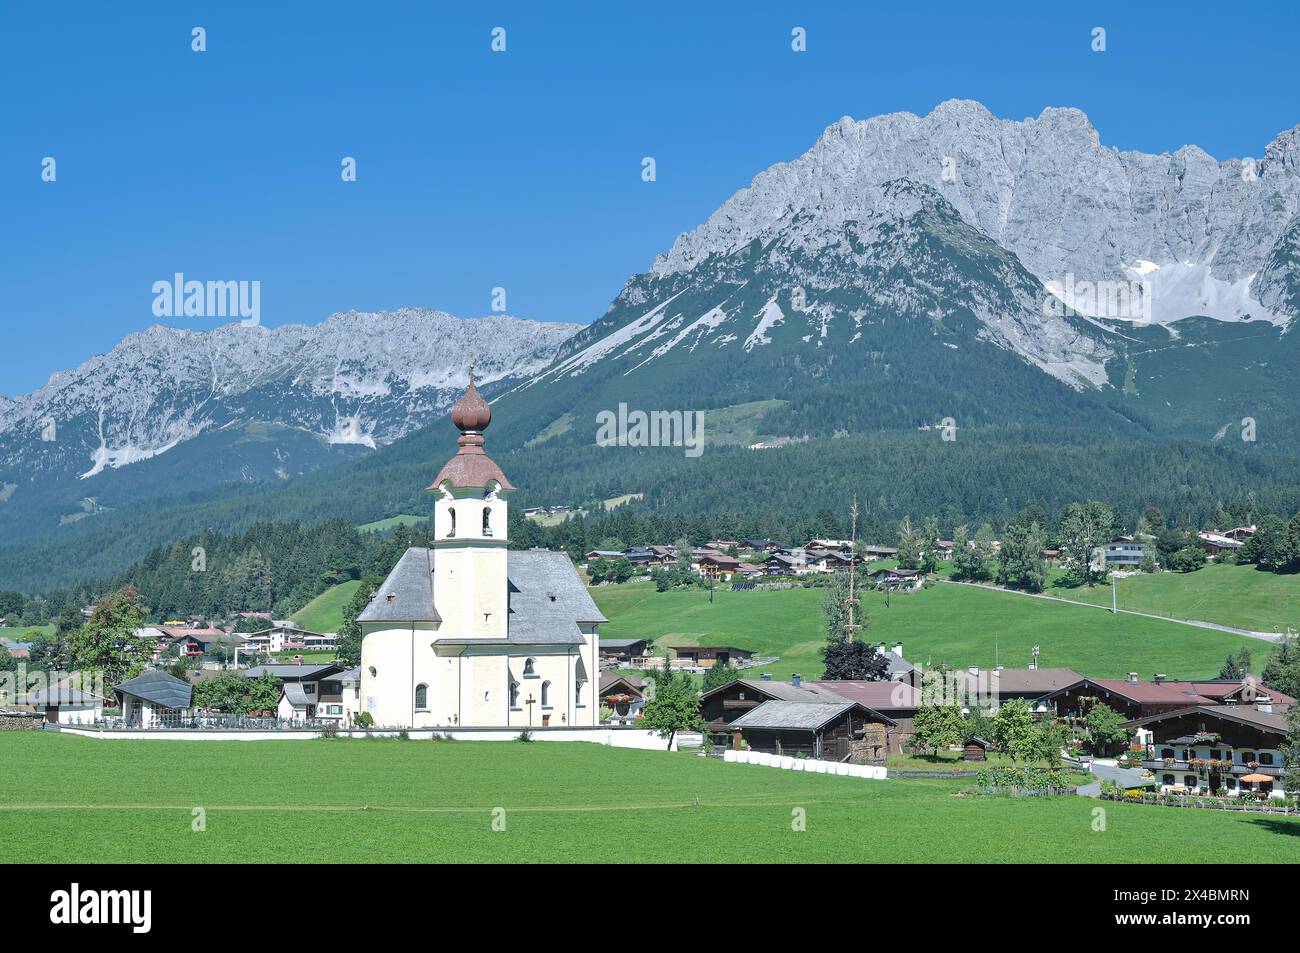 popular idyllic Village of Going am Wilden Kaiser with Kaisergebirge Mountains in Background,Tirol,Austria Stock Photo